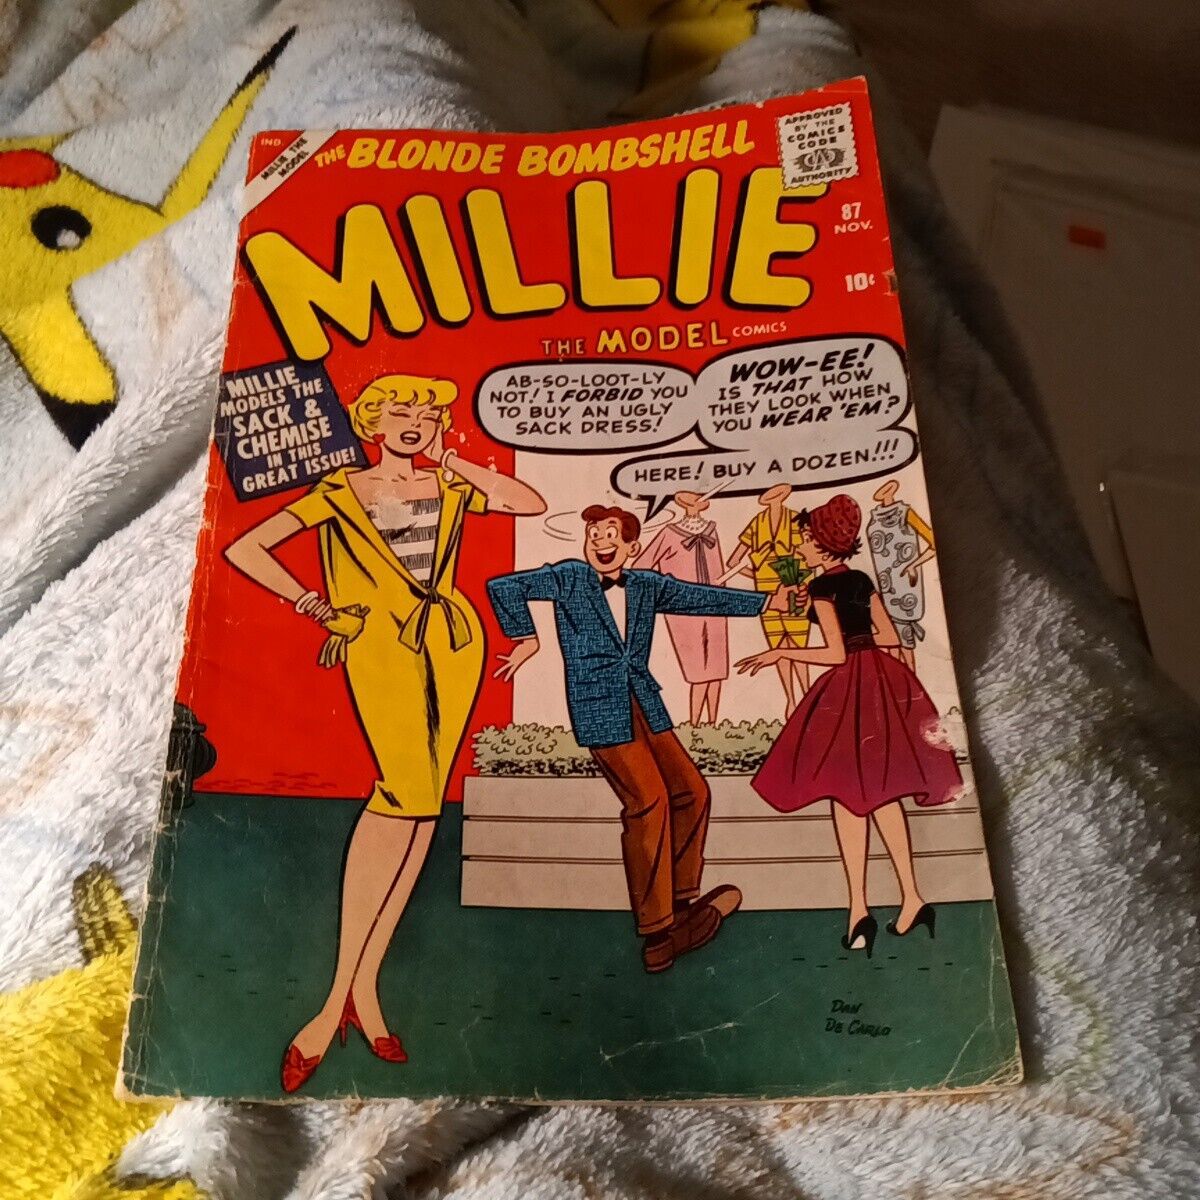 Millie the Model 87 marvel atlas timely 1958 dan Decarlo Paperdoll good girl art